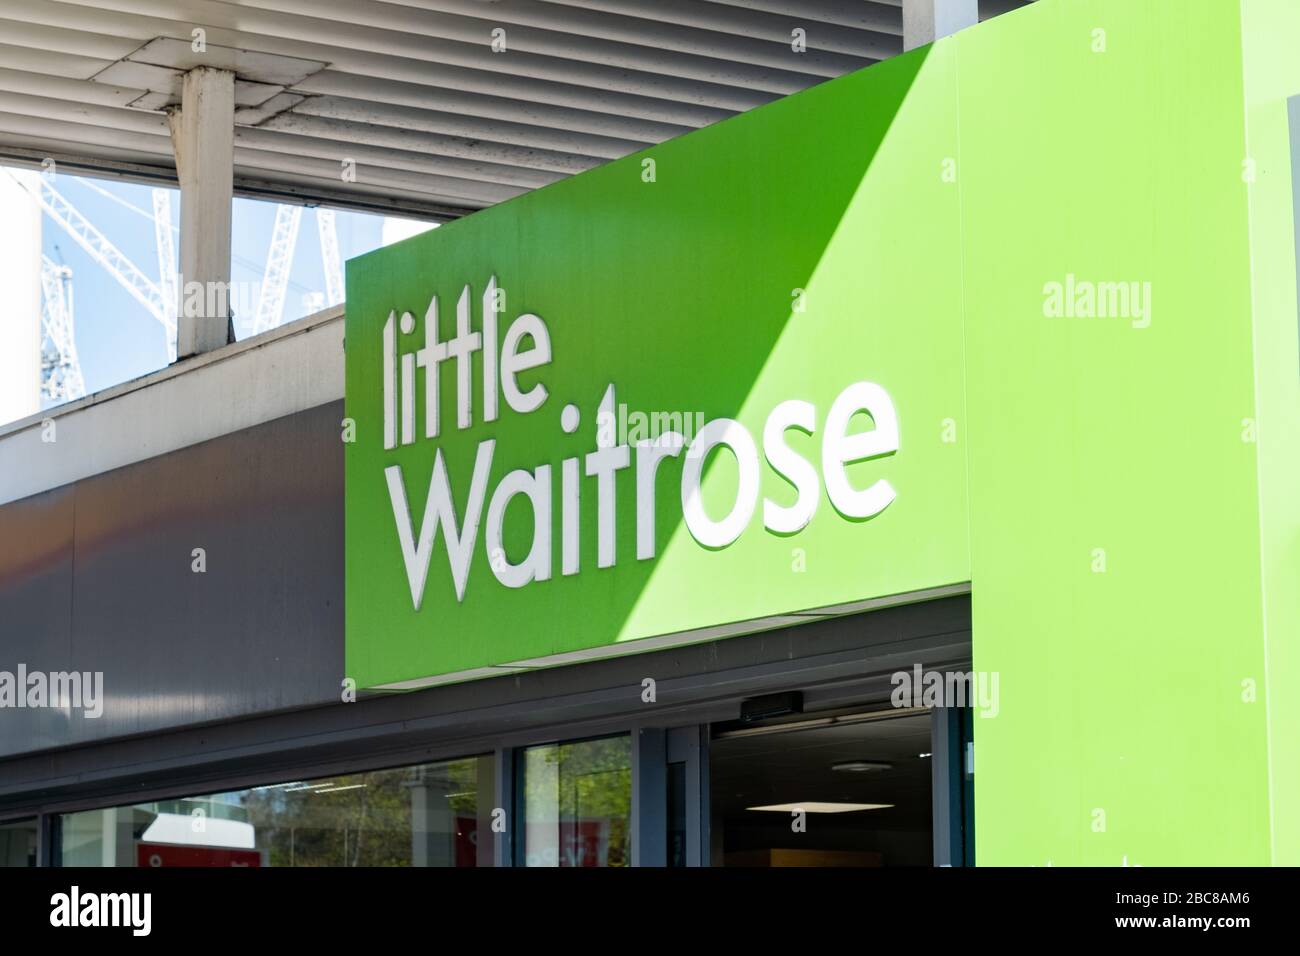 Little Waitrose - versione locale della catena di supermercati britannici - logo esterno / segnaletica - Londra Foto Stock